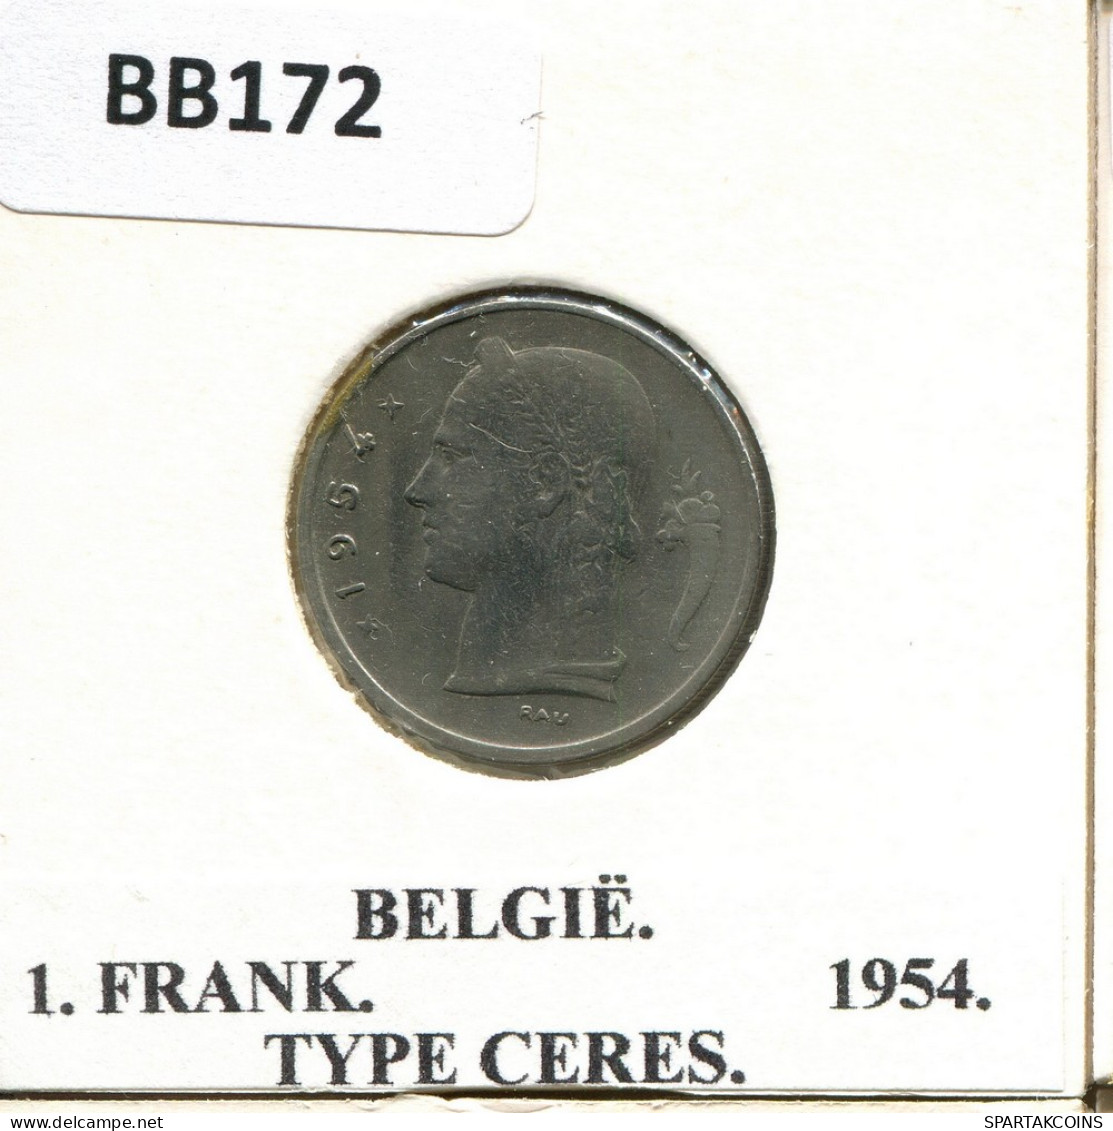 1 FRANC 1945 DUTCH Text BELGIUM Coin #BB172.U - 1 Franc